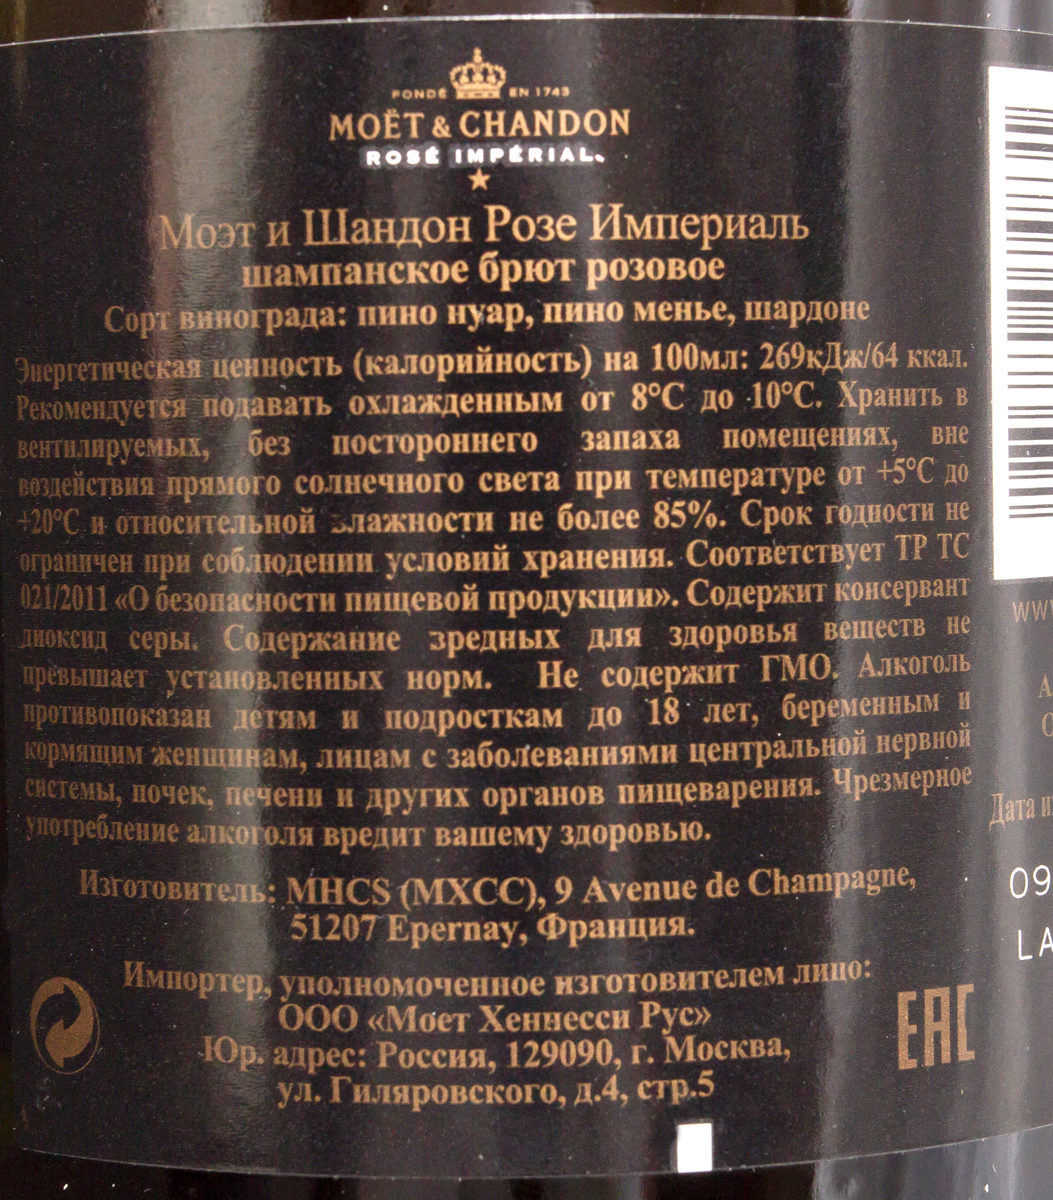 Шампанское Моэт&Шандон Розе Империаль п/к роз.брют